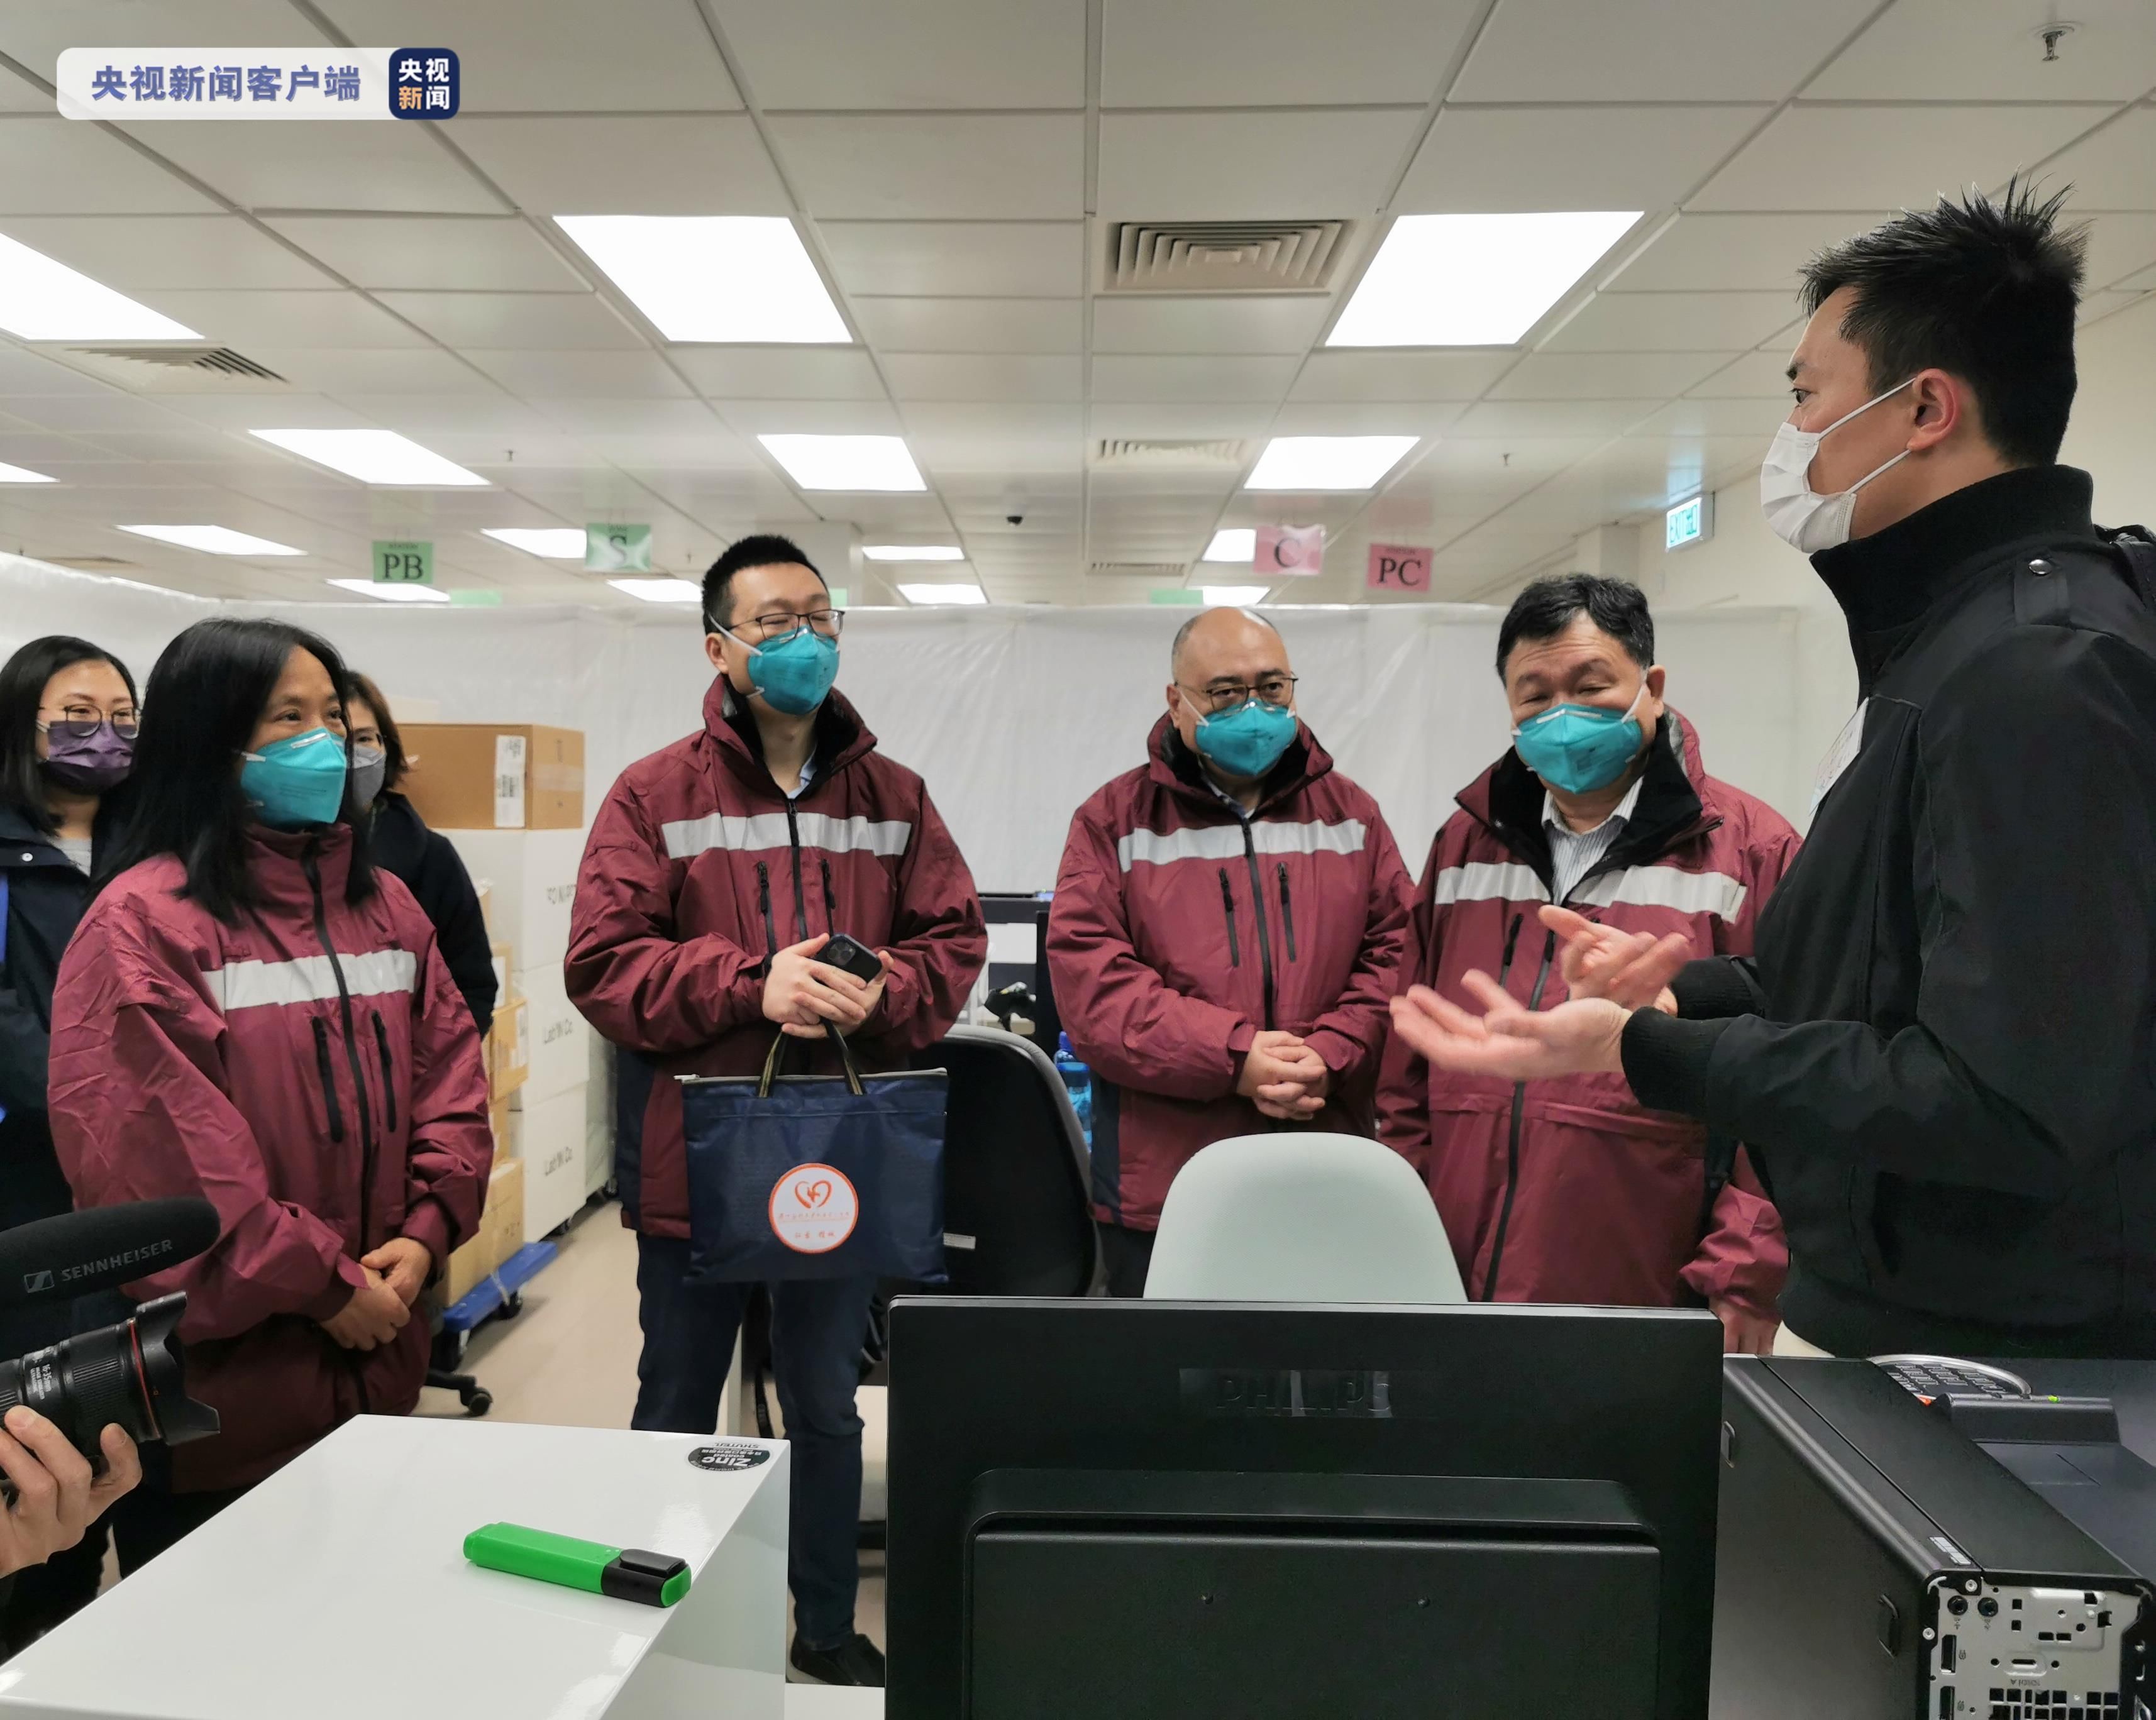 抗疫|内地援港抗疫专家组到访北大屿山医院香港感染控制中心了解工作流程